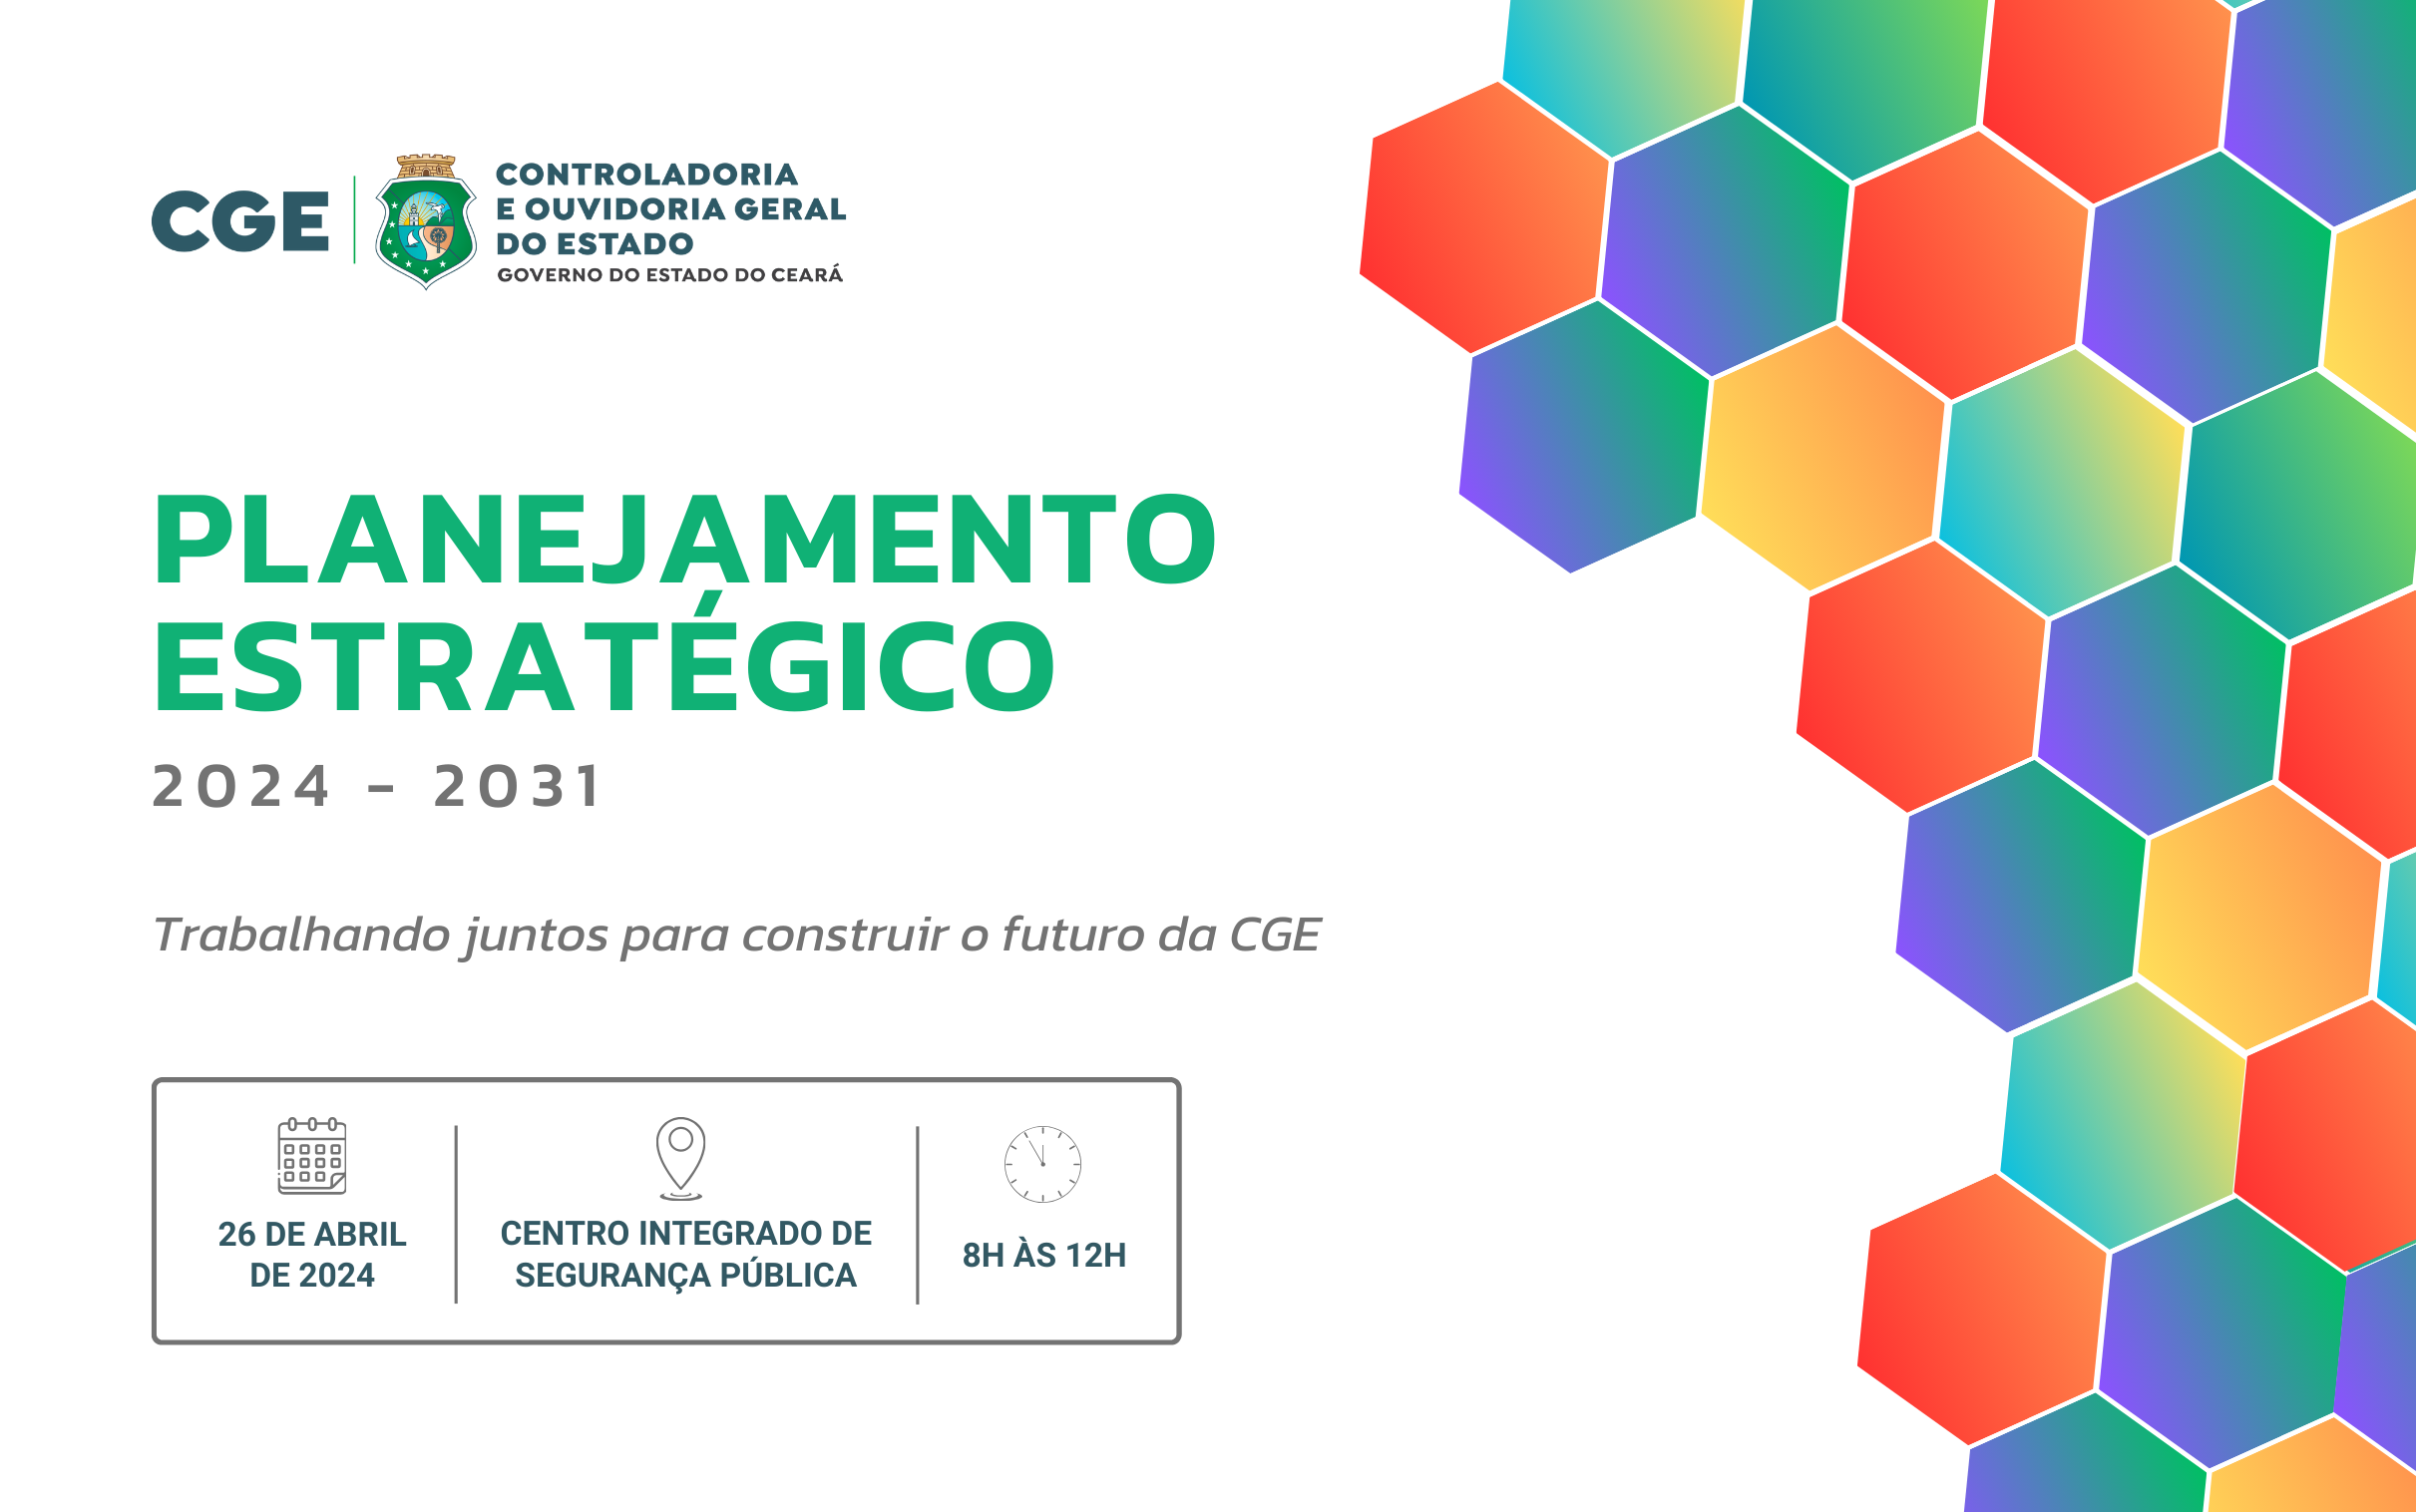 CGE convida órgãos e entidades públicas a participarem do lançamento do seu Planejamento Estratégico 2024-2031